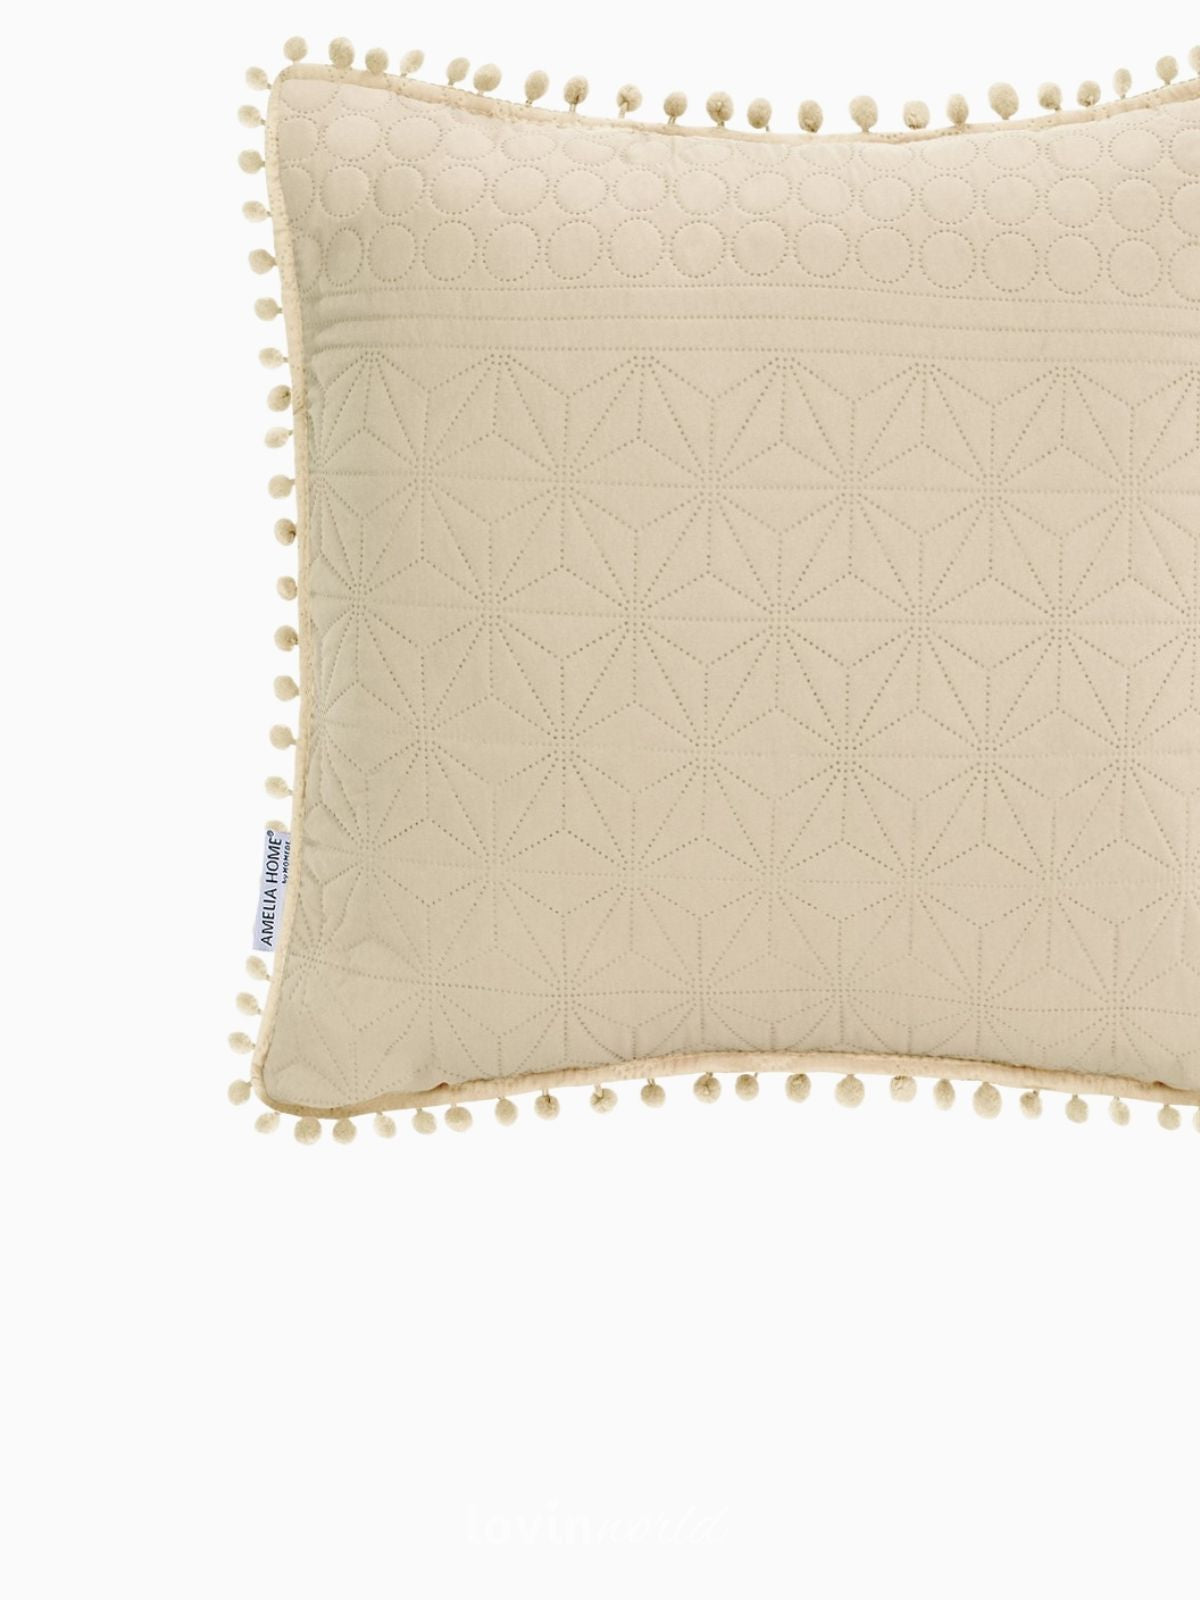 Cuscino decorativo Meadore in colore beige 45x45 cm.-3